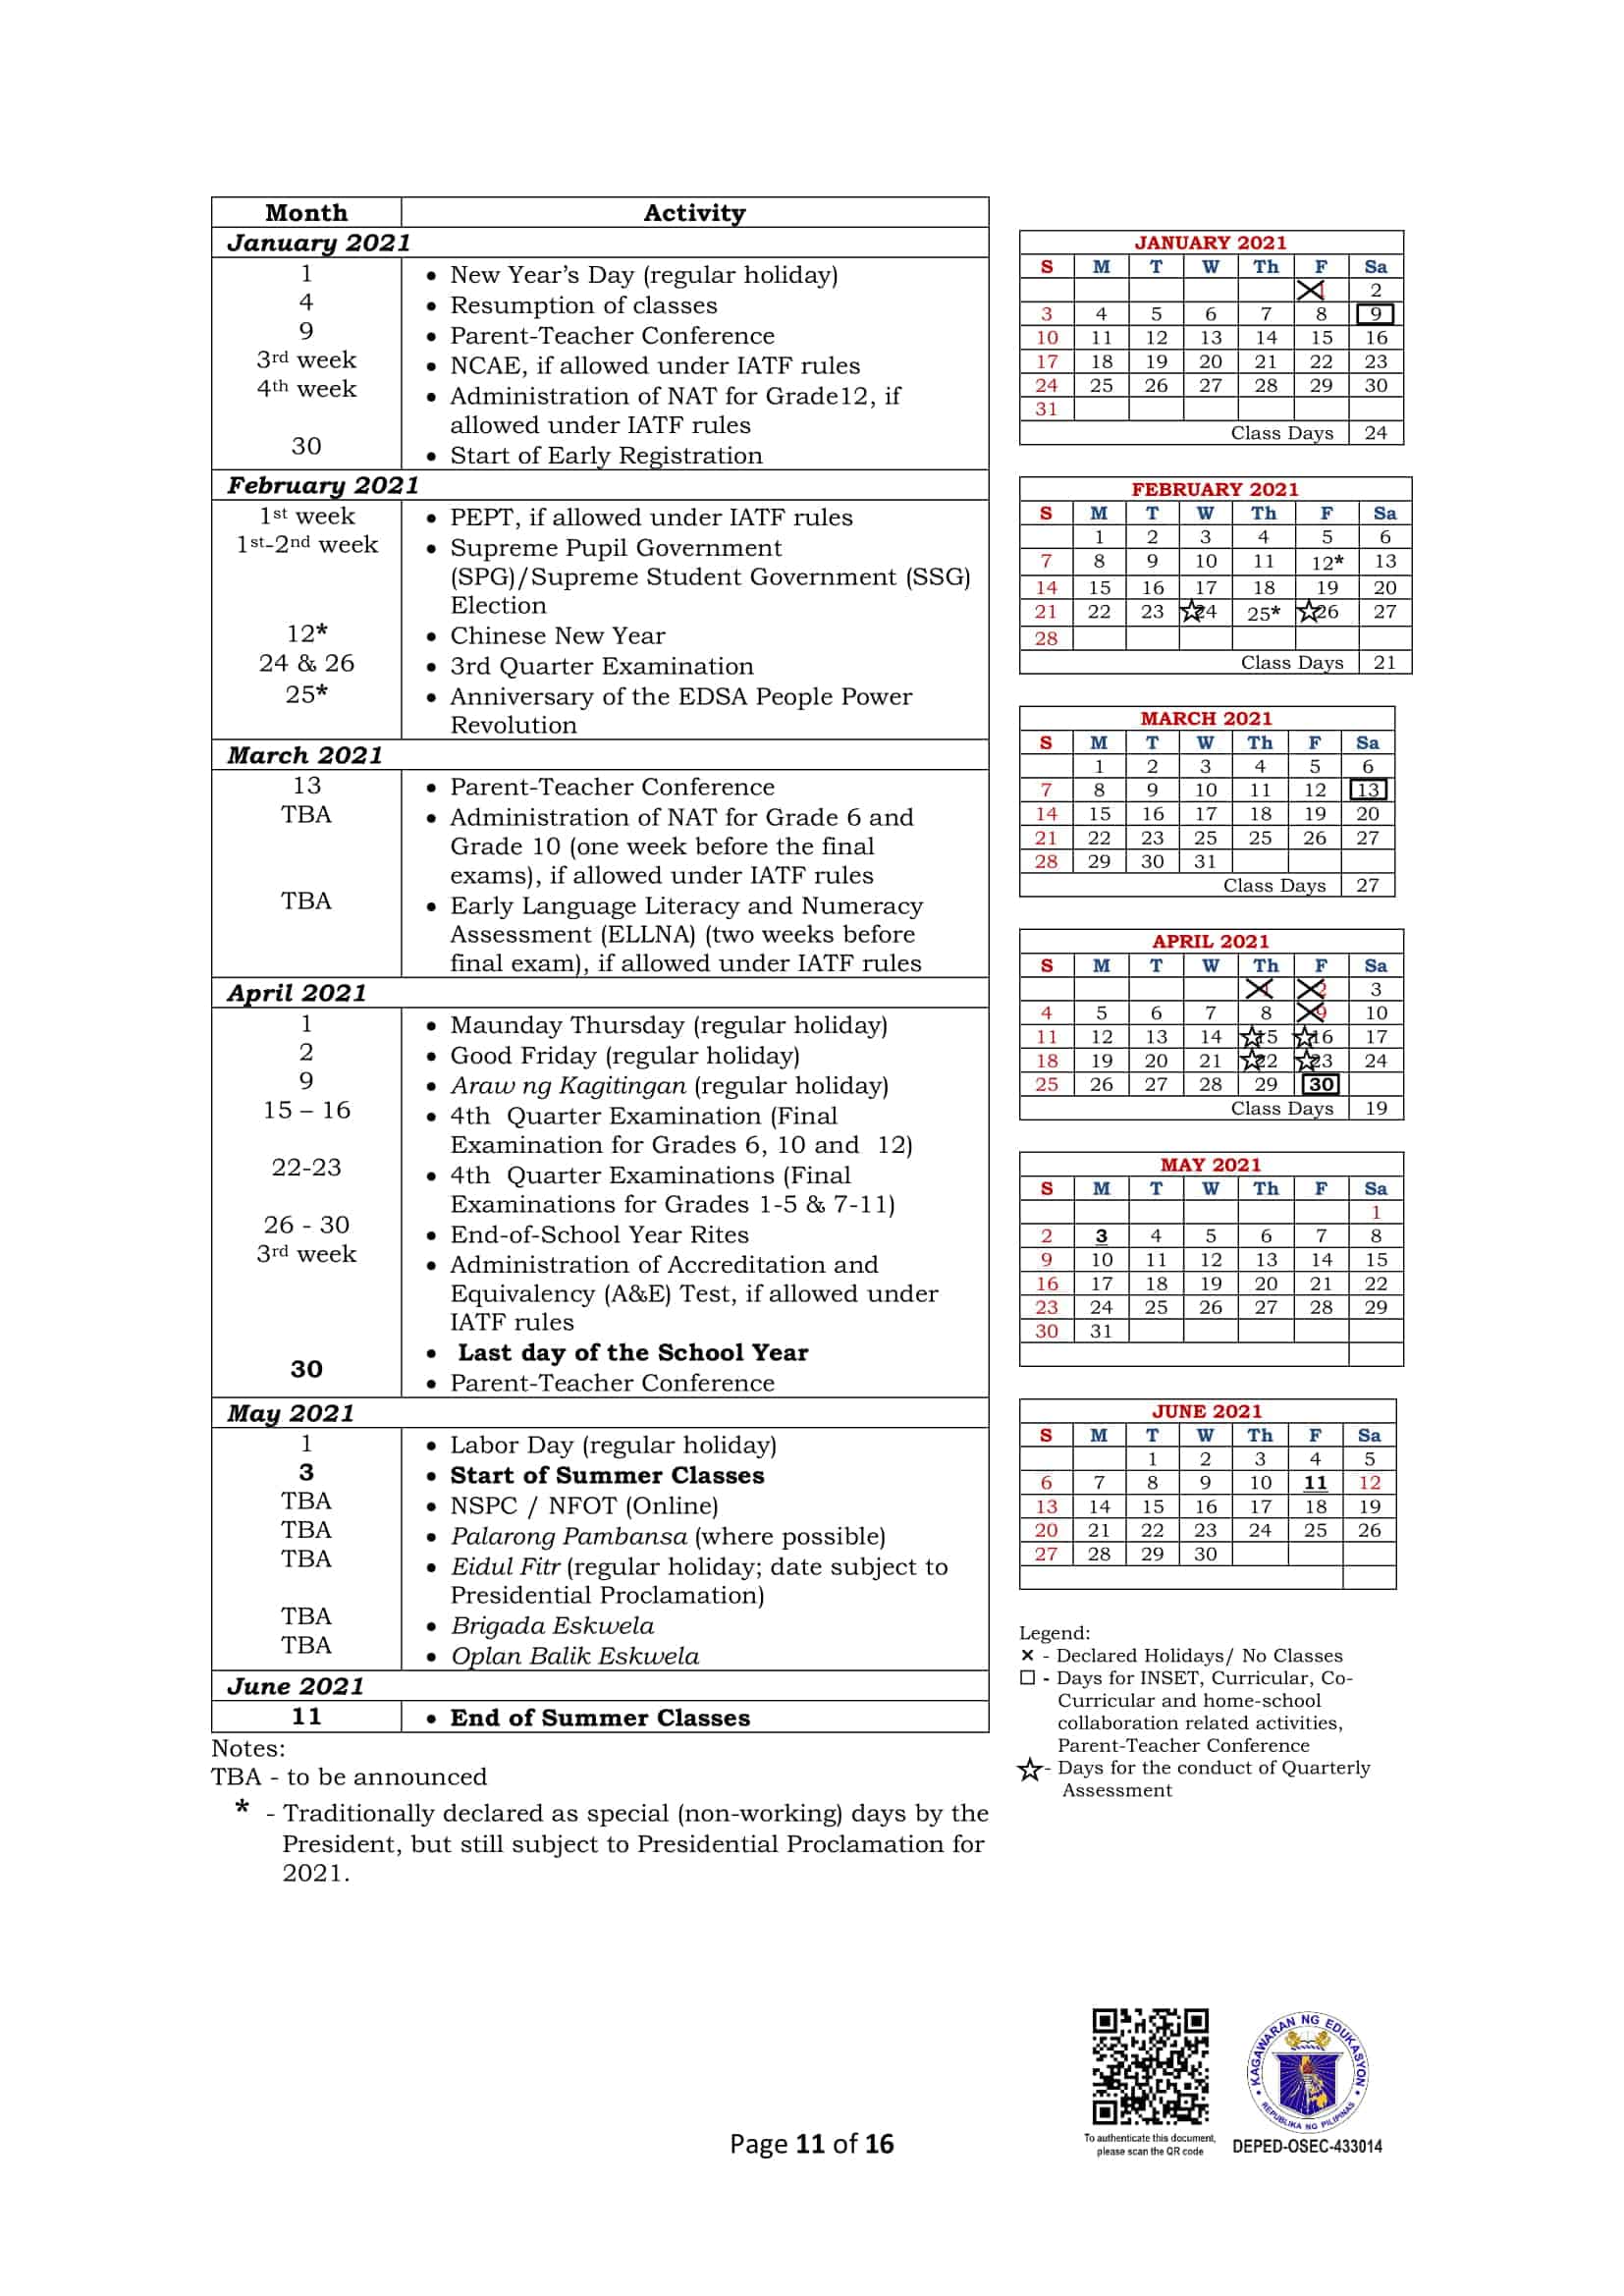 DepEd Calendar Of Activities